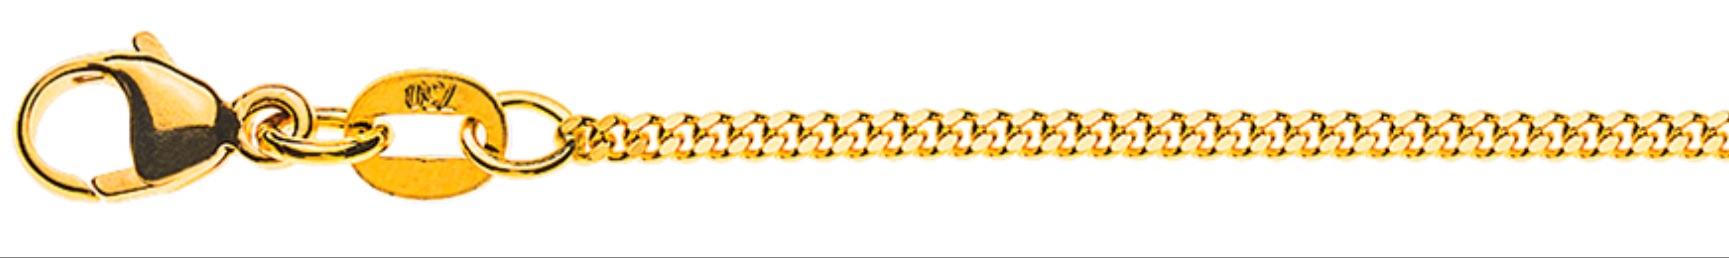 AURONOS Élégance Necklace yellow gold 14K curb chain polished 40cm 1.6mm